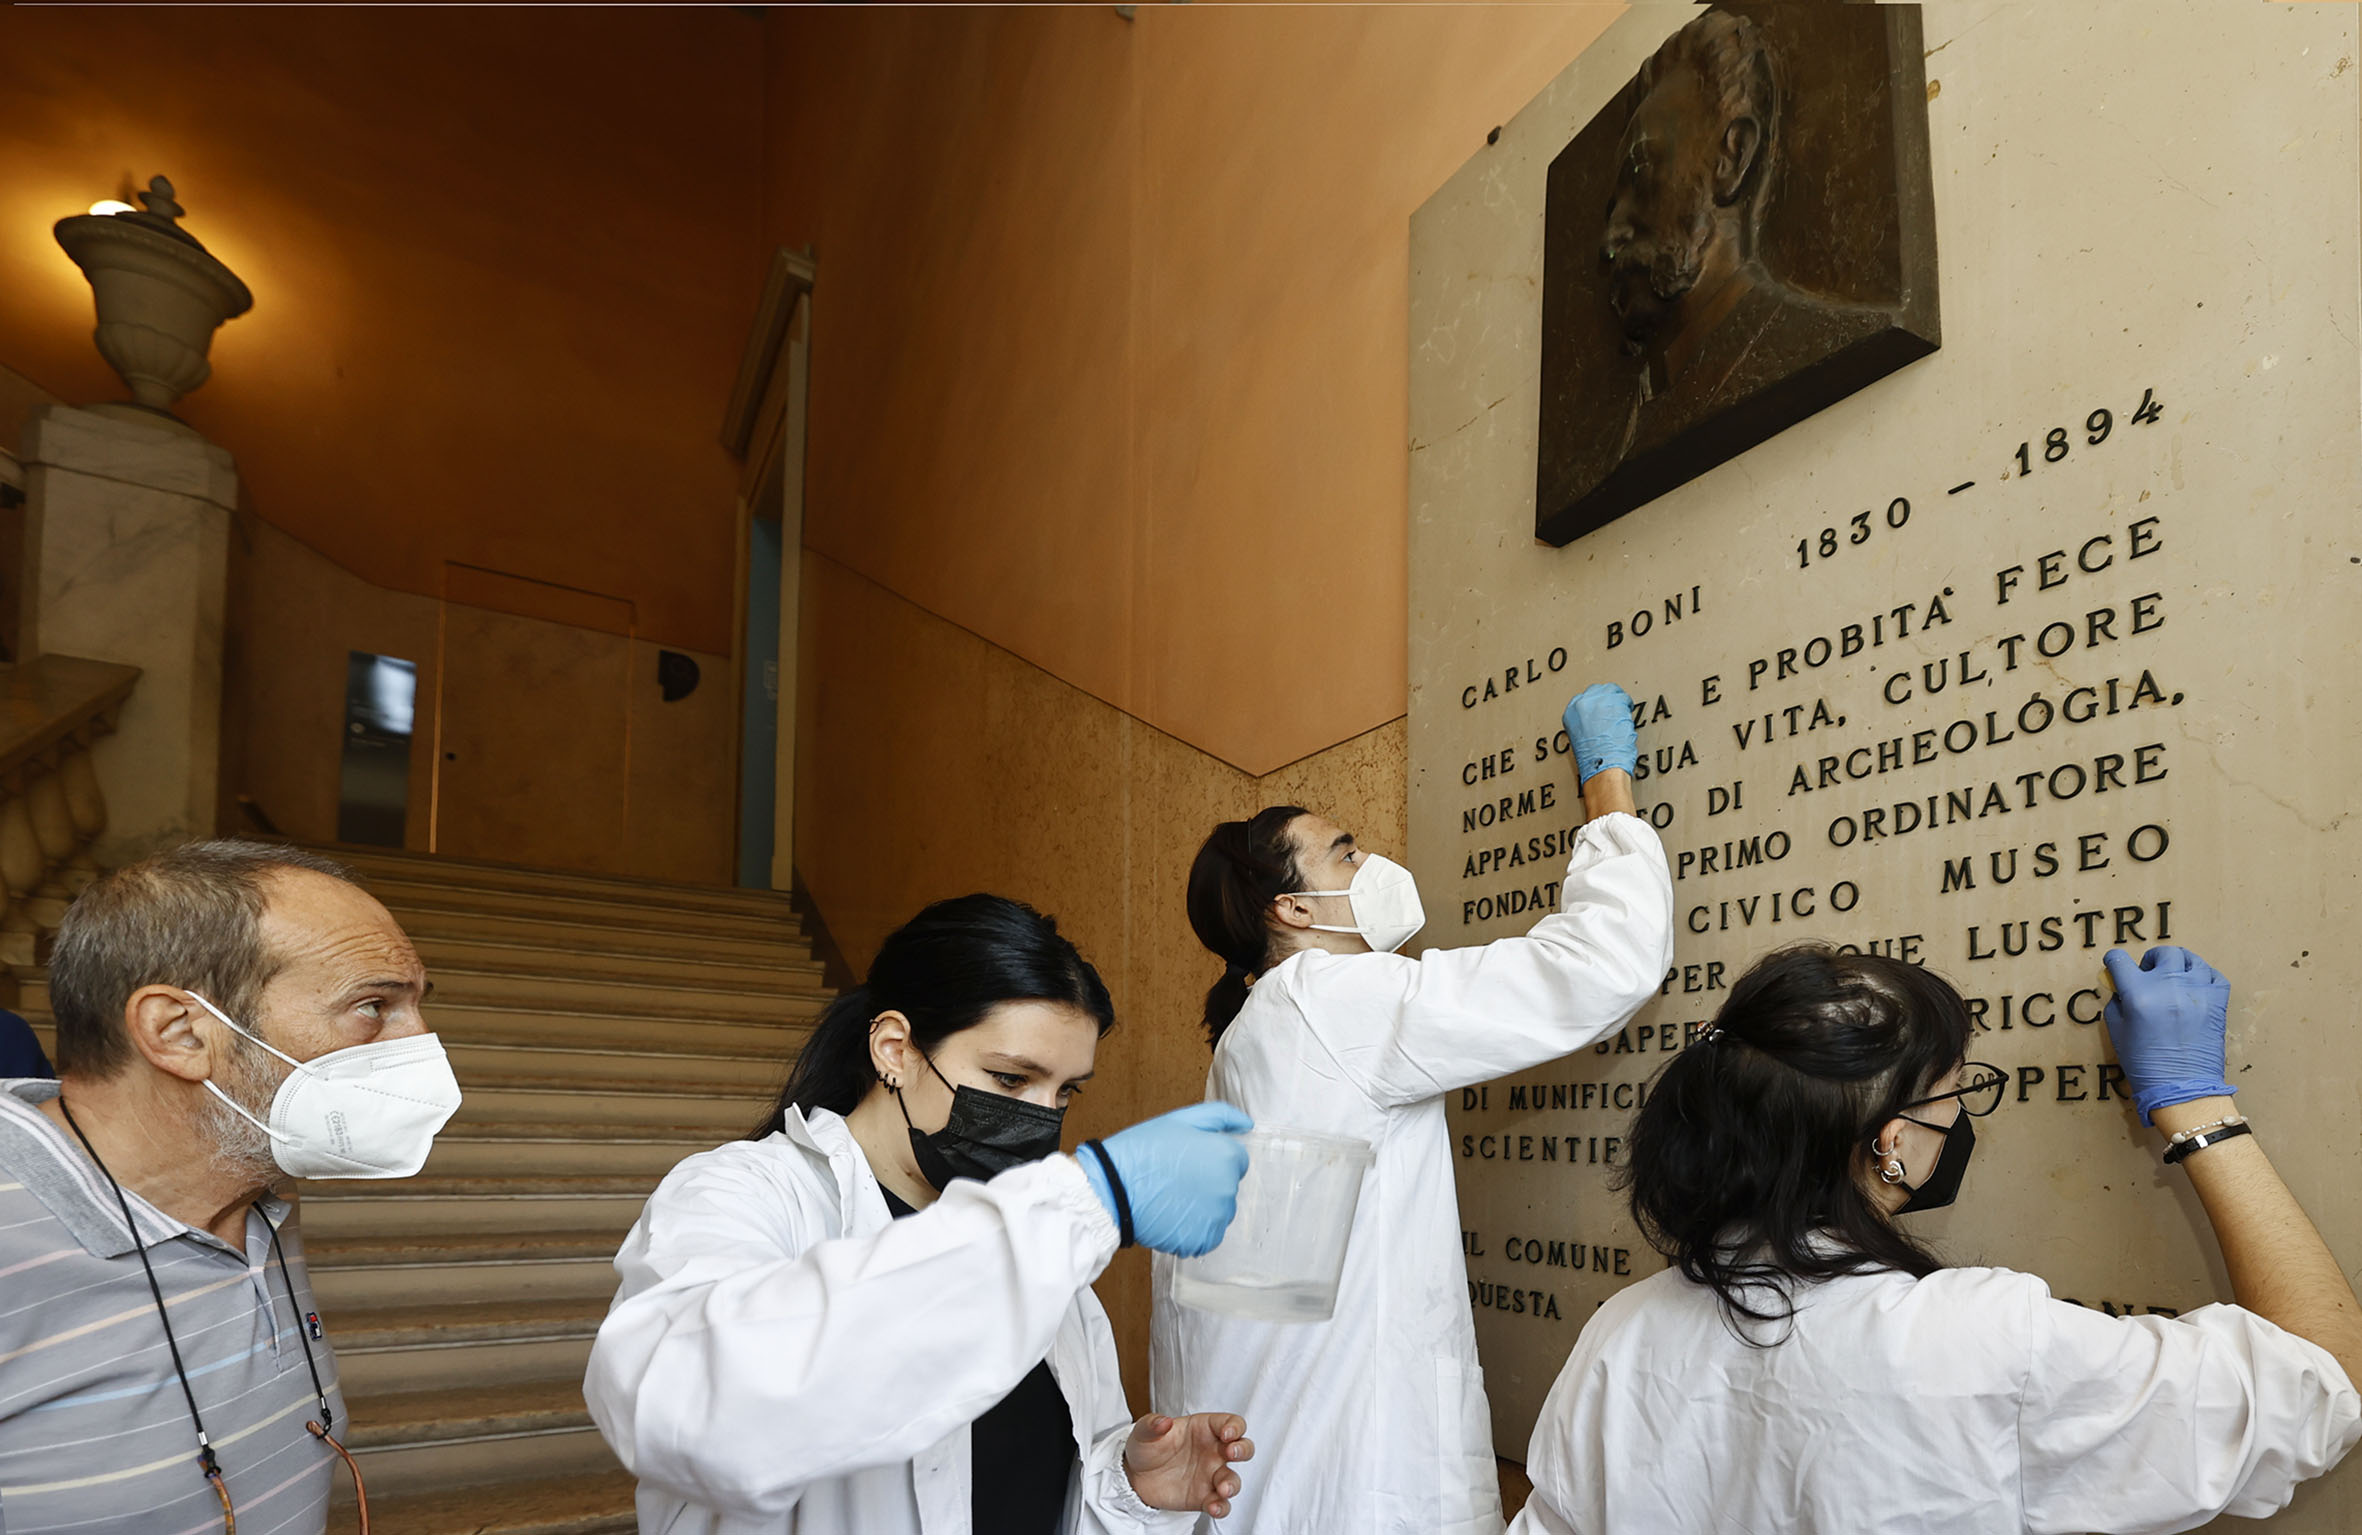  Museo civico, gli studenti puliscono la stele di Carlo Boni